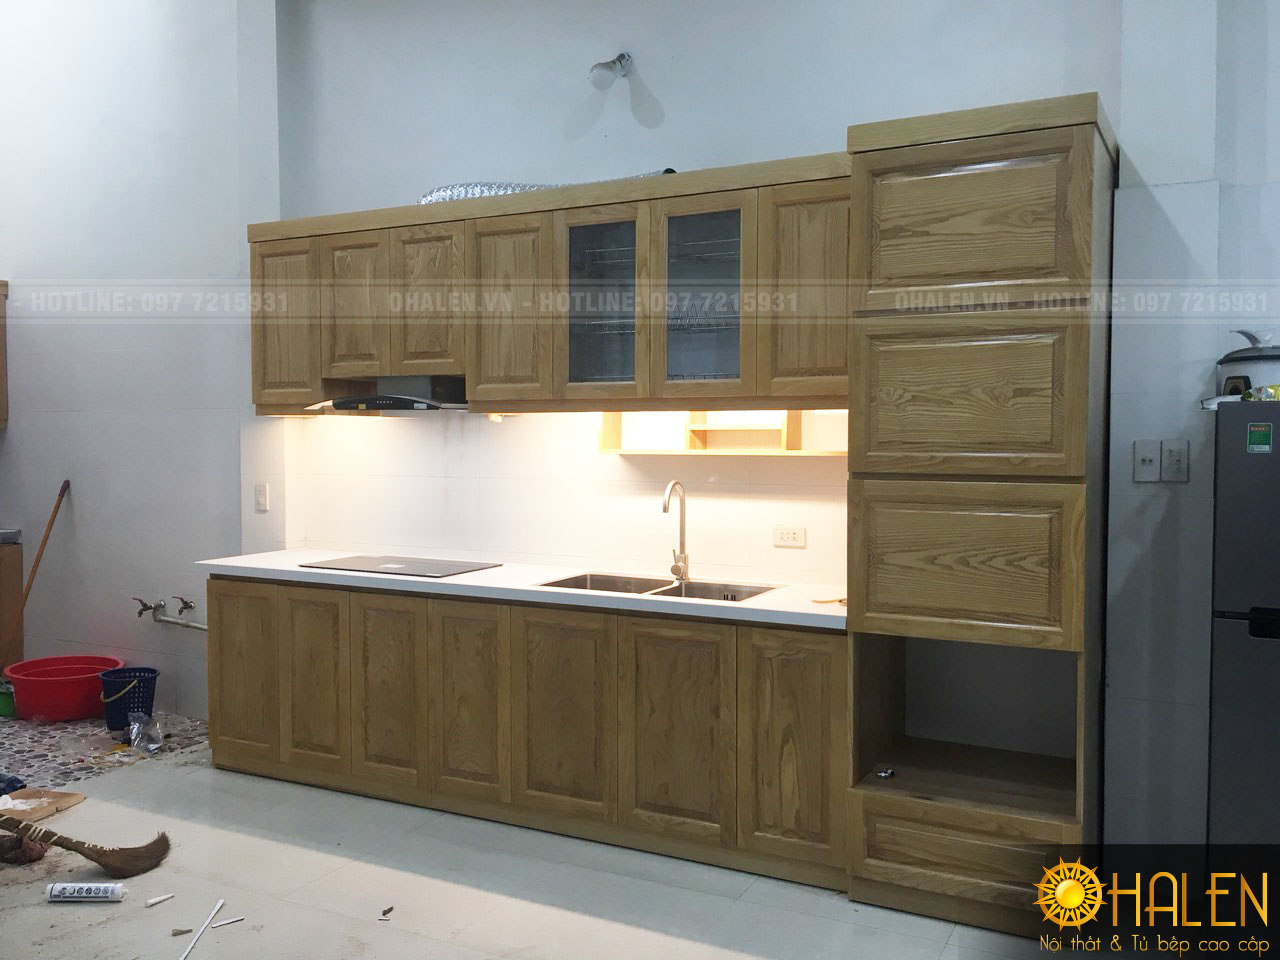 Bộ tủ bếp của gia đình anh Kiên được thiết kế hiện đại , đầy đủ công năng sử dụng